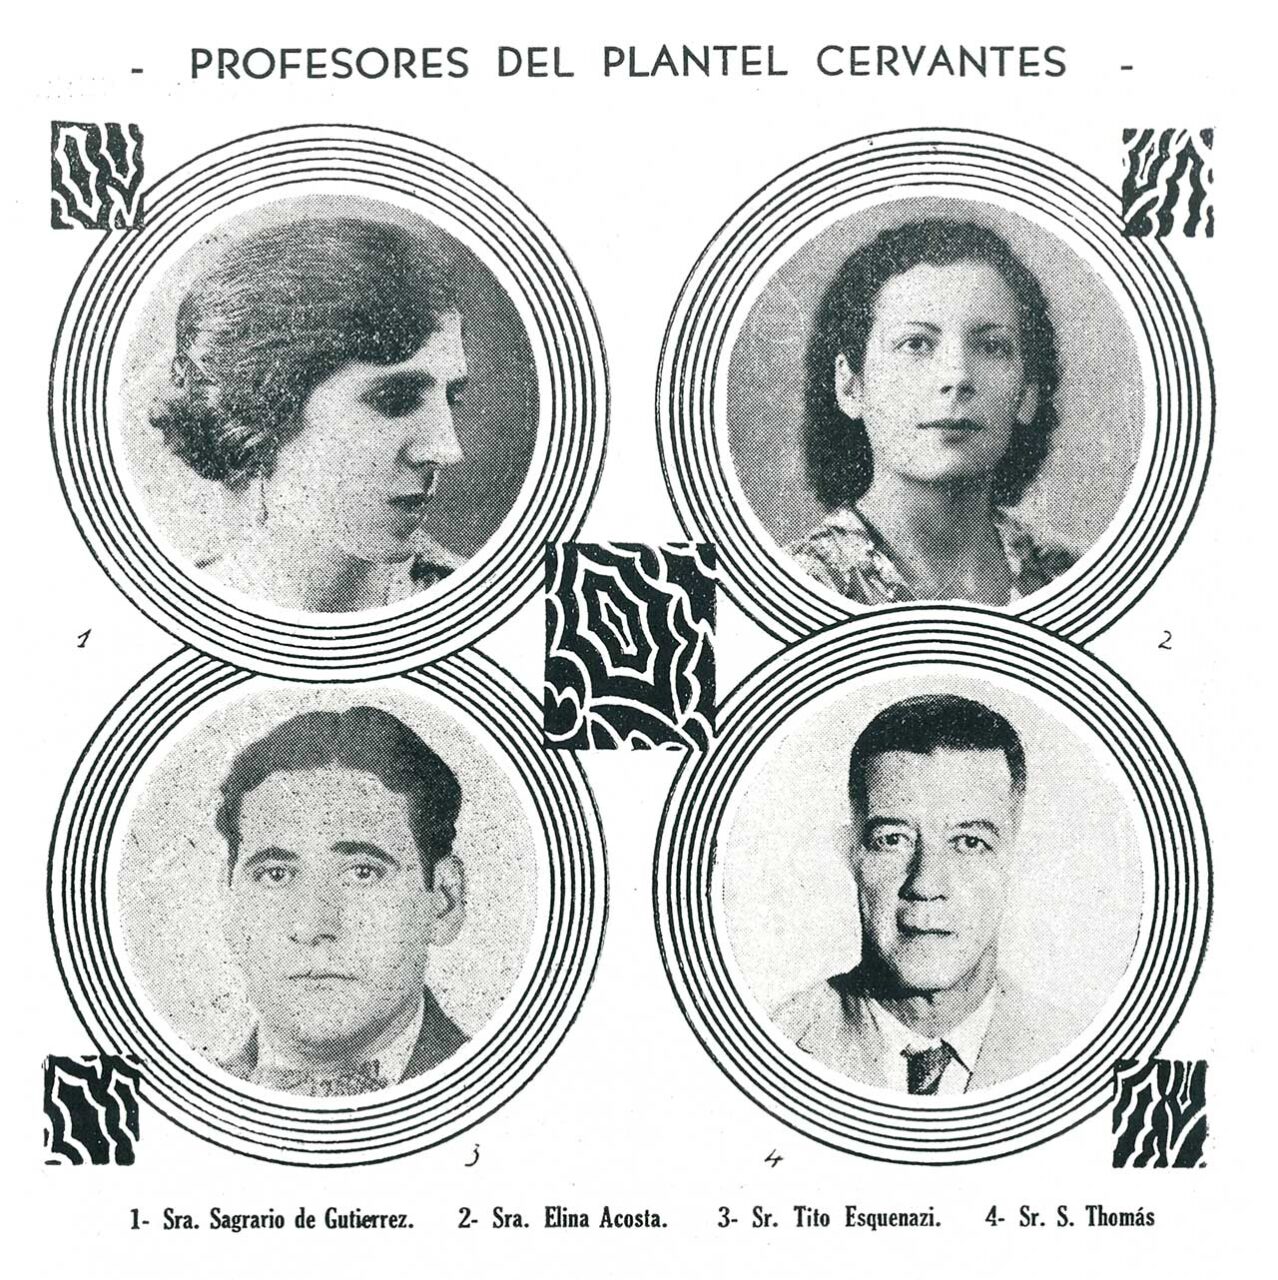 Profesoras y profesores del Plantel Cervantes del Centro Castellano de La Habana (Cuba), hacia 194